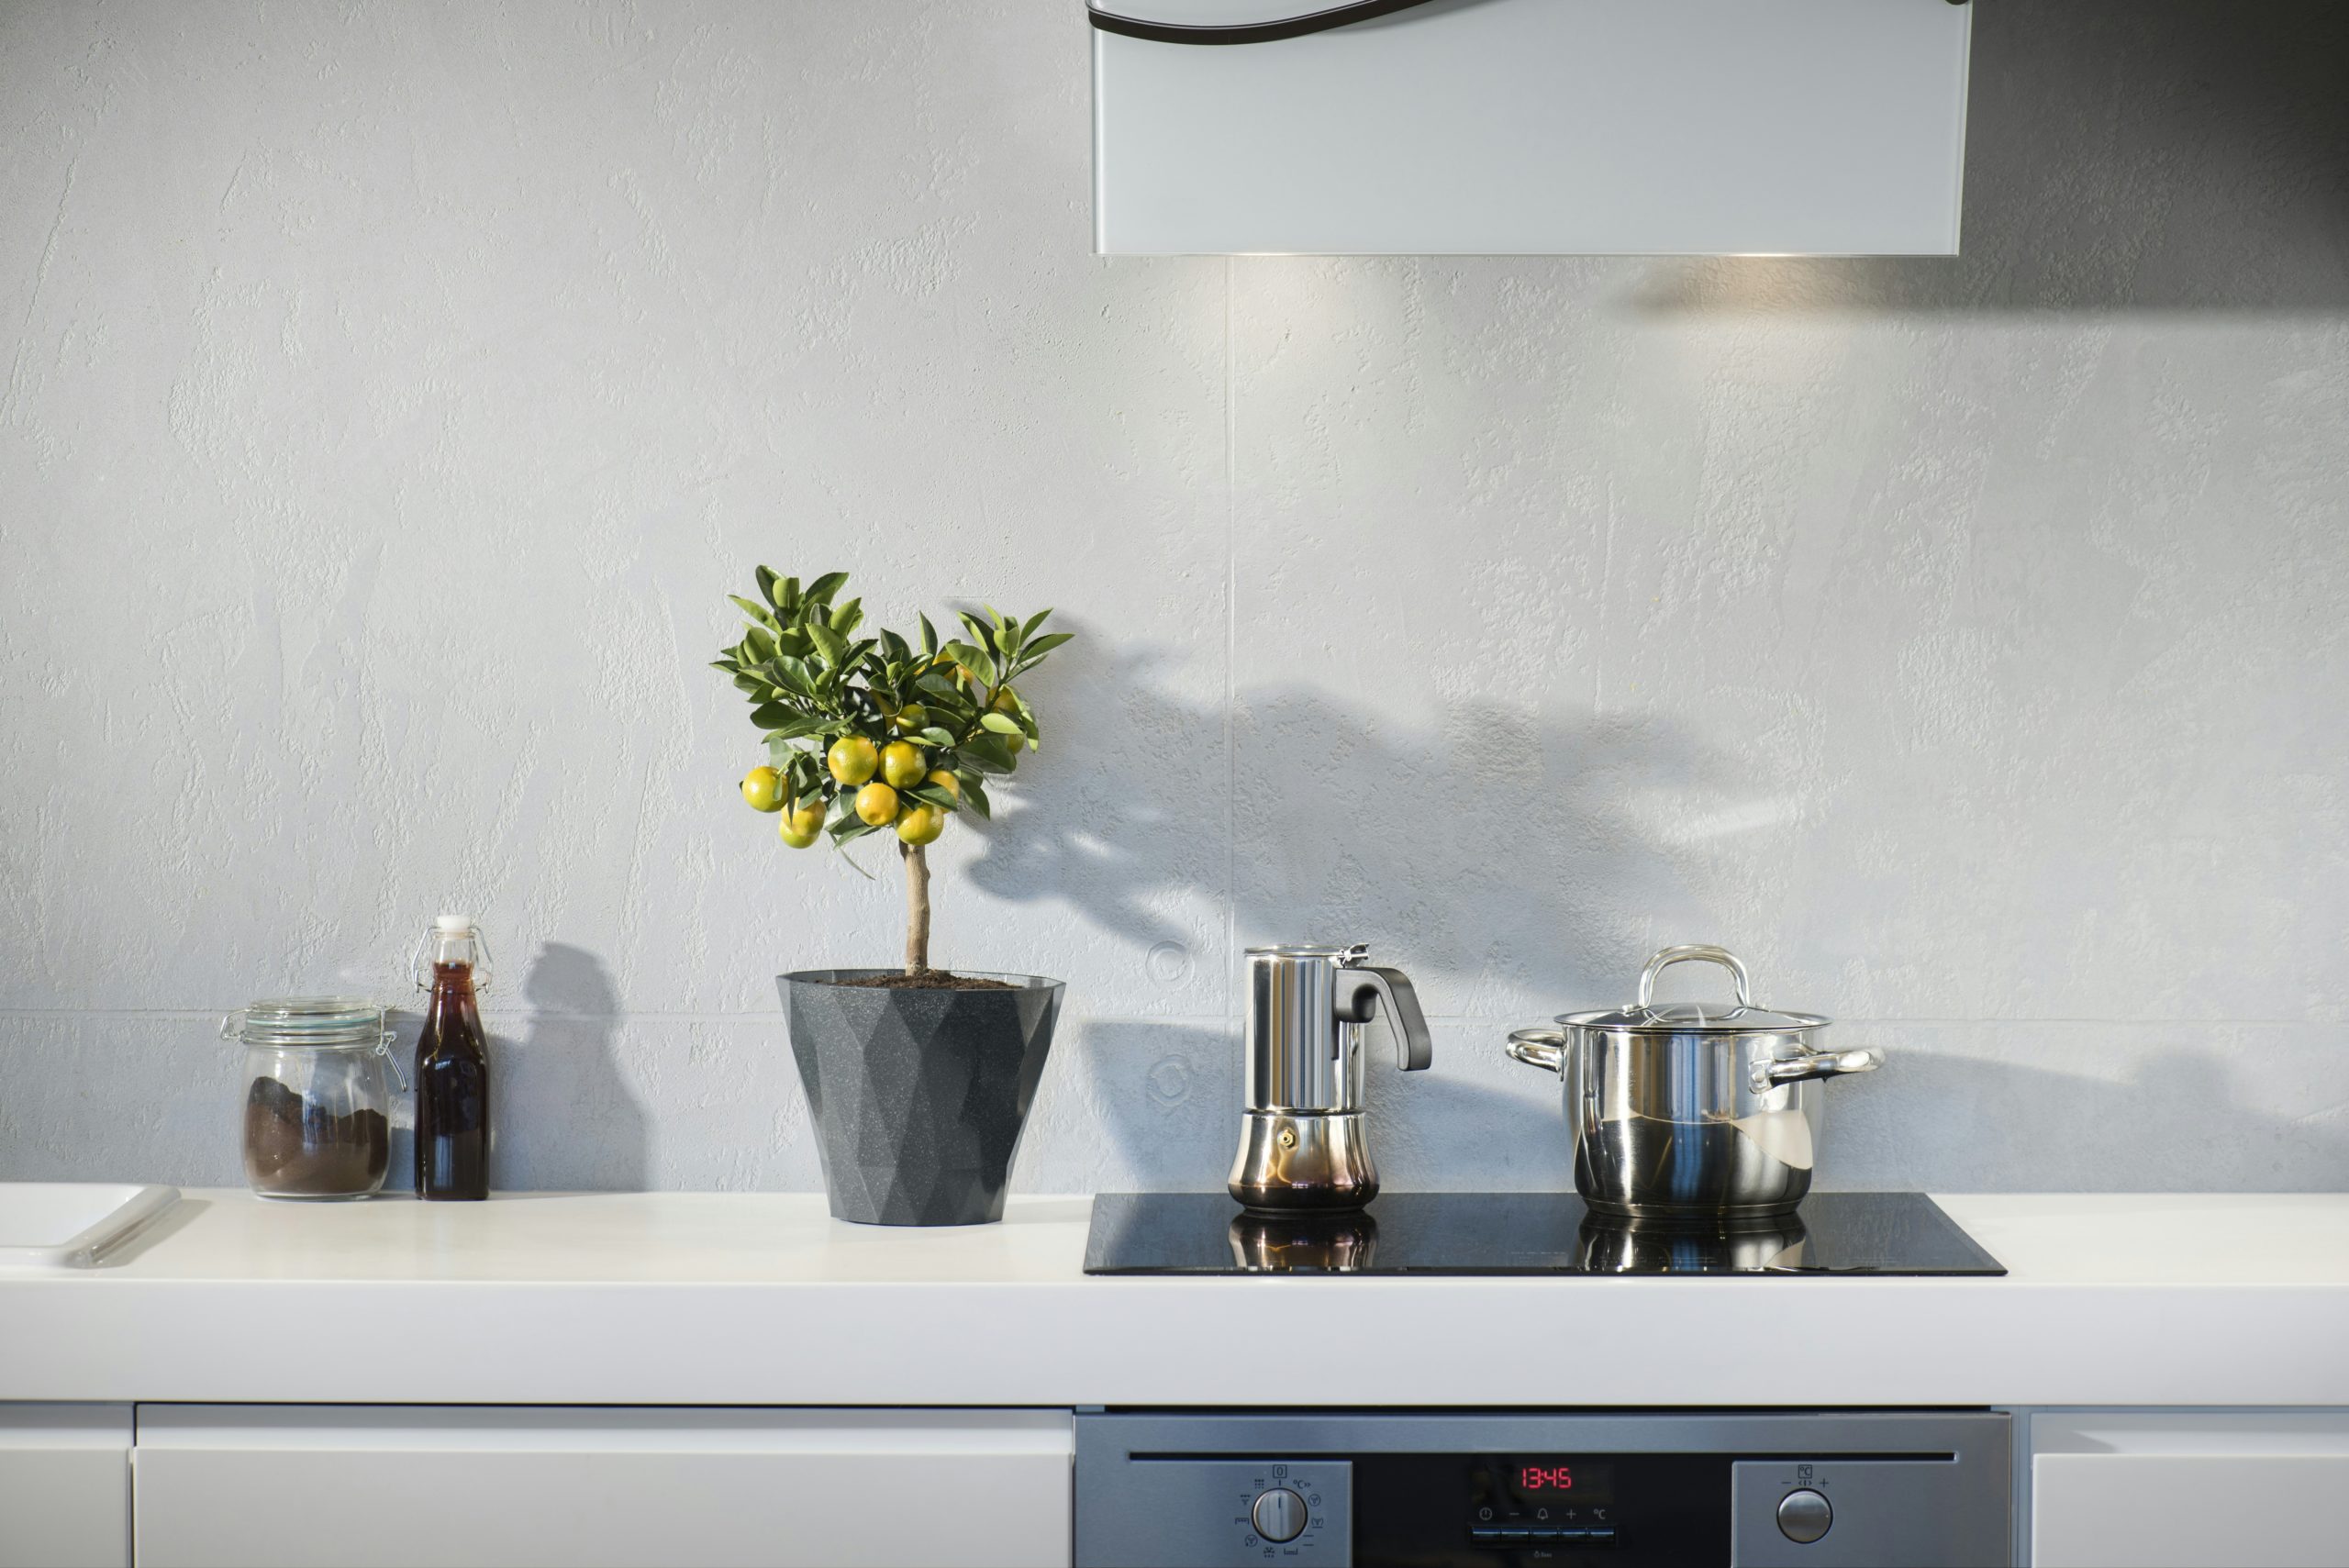 Μην αμελείτε να καθαρίσετε 4 σημεία στην κουζίνα σας – Το κόλπο με ένα απροσδόκητο εργαλείο ομορφιάς